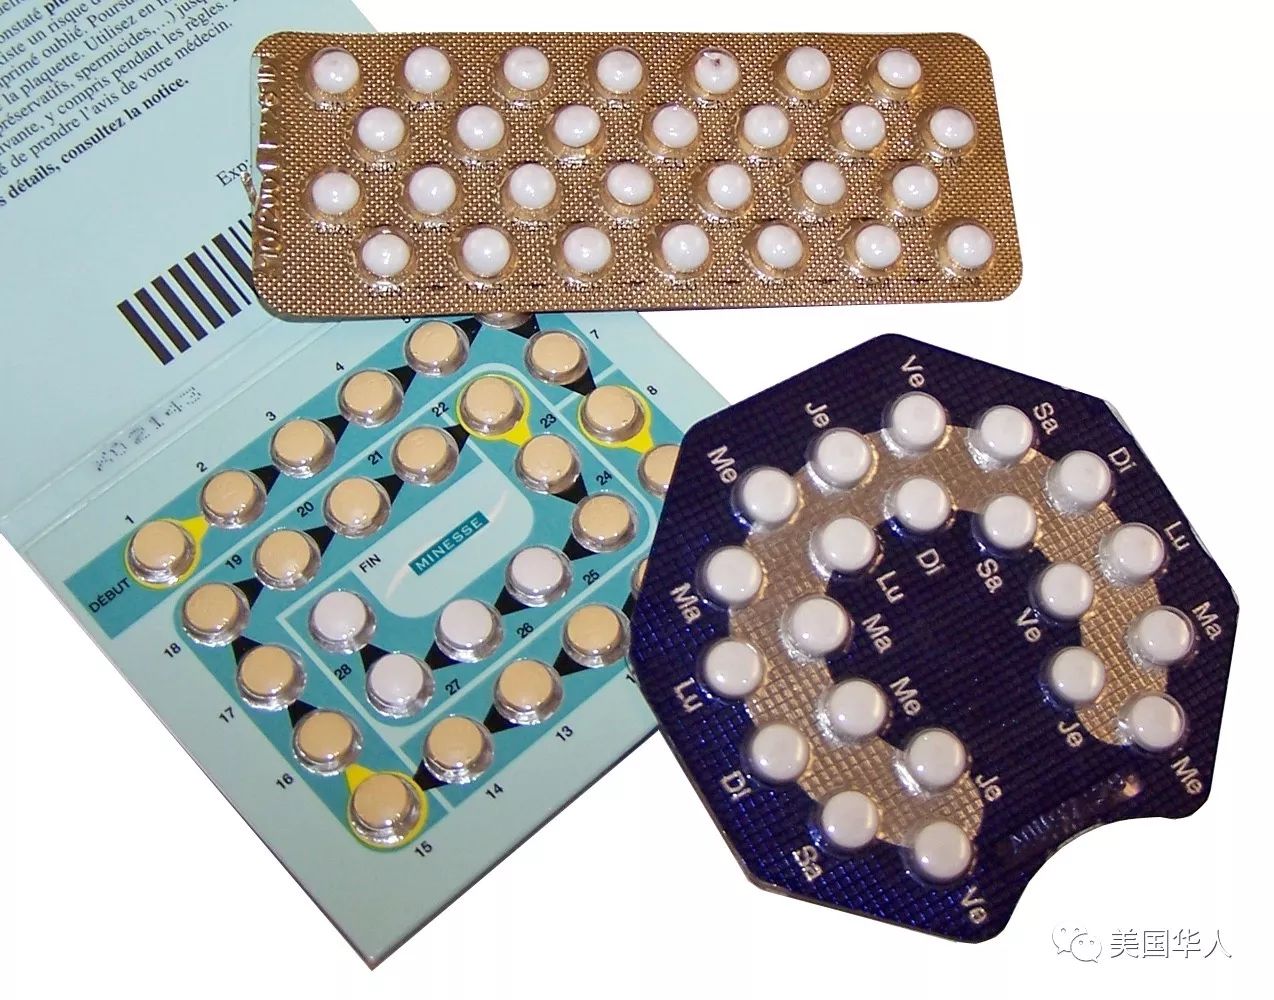 图姐 | 低剂量避孕药亦增加乳腺癌几率，避孕器不能幸免